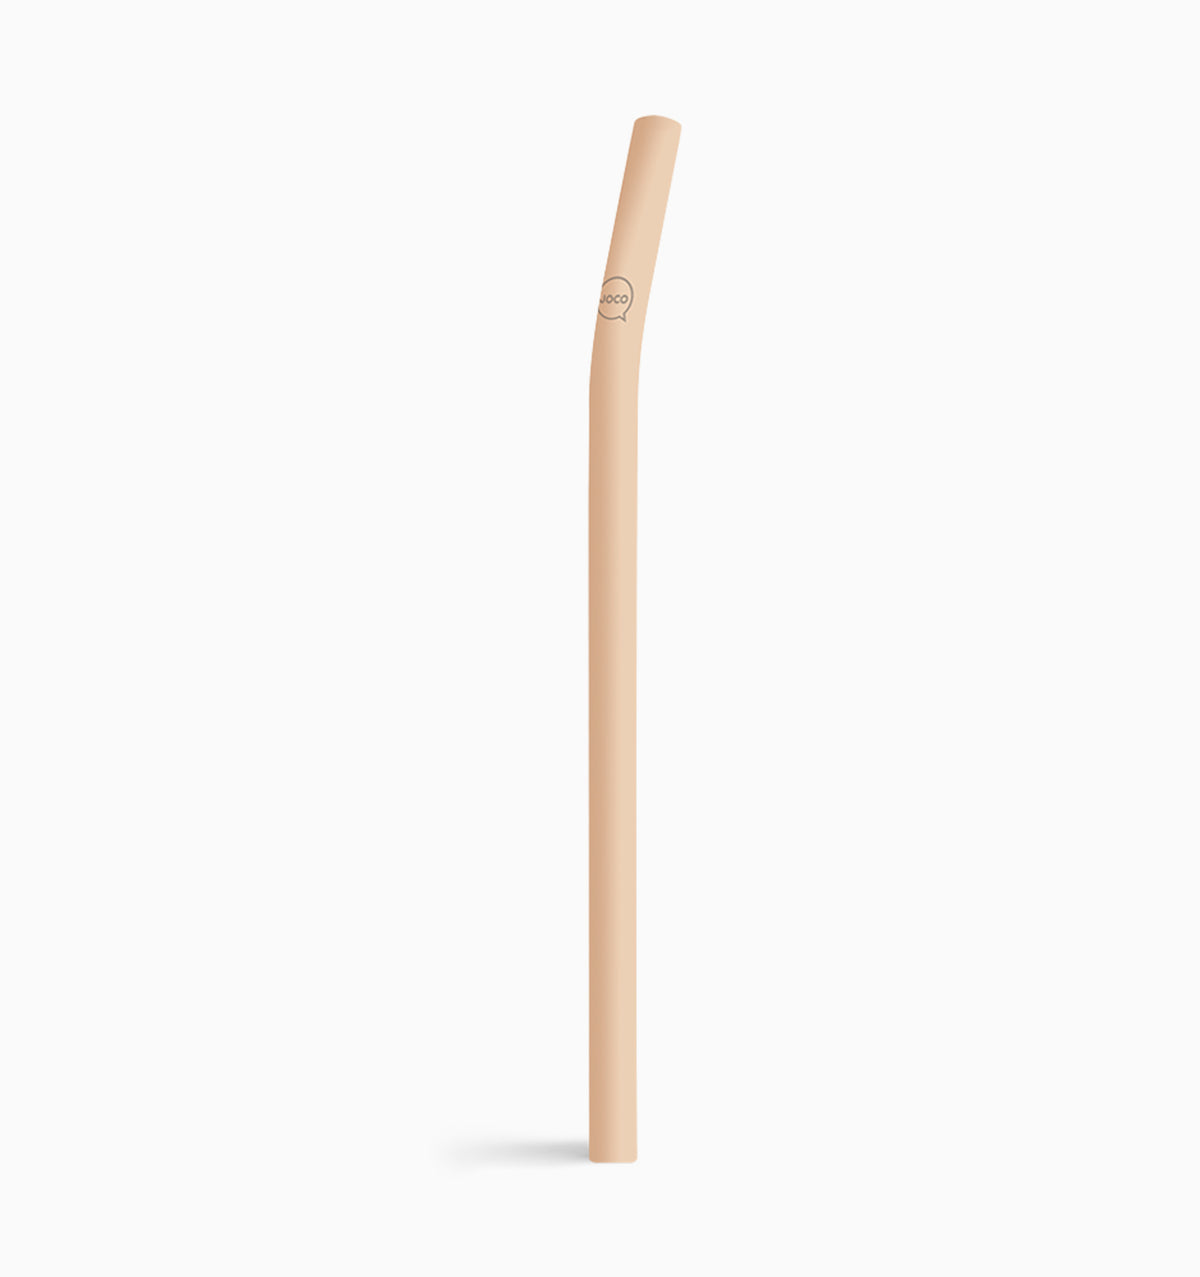 Joco Velvet Grip Straw 8.5" - Amberlight